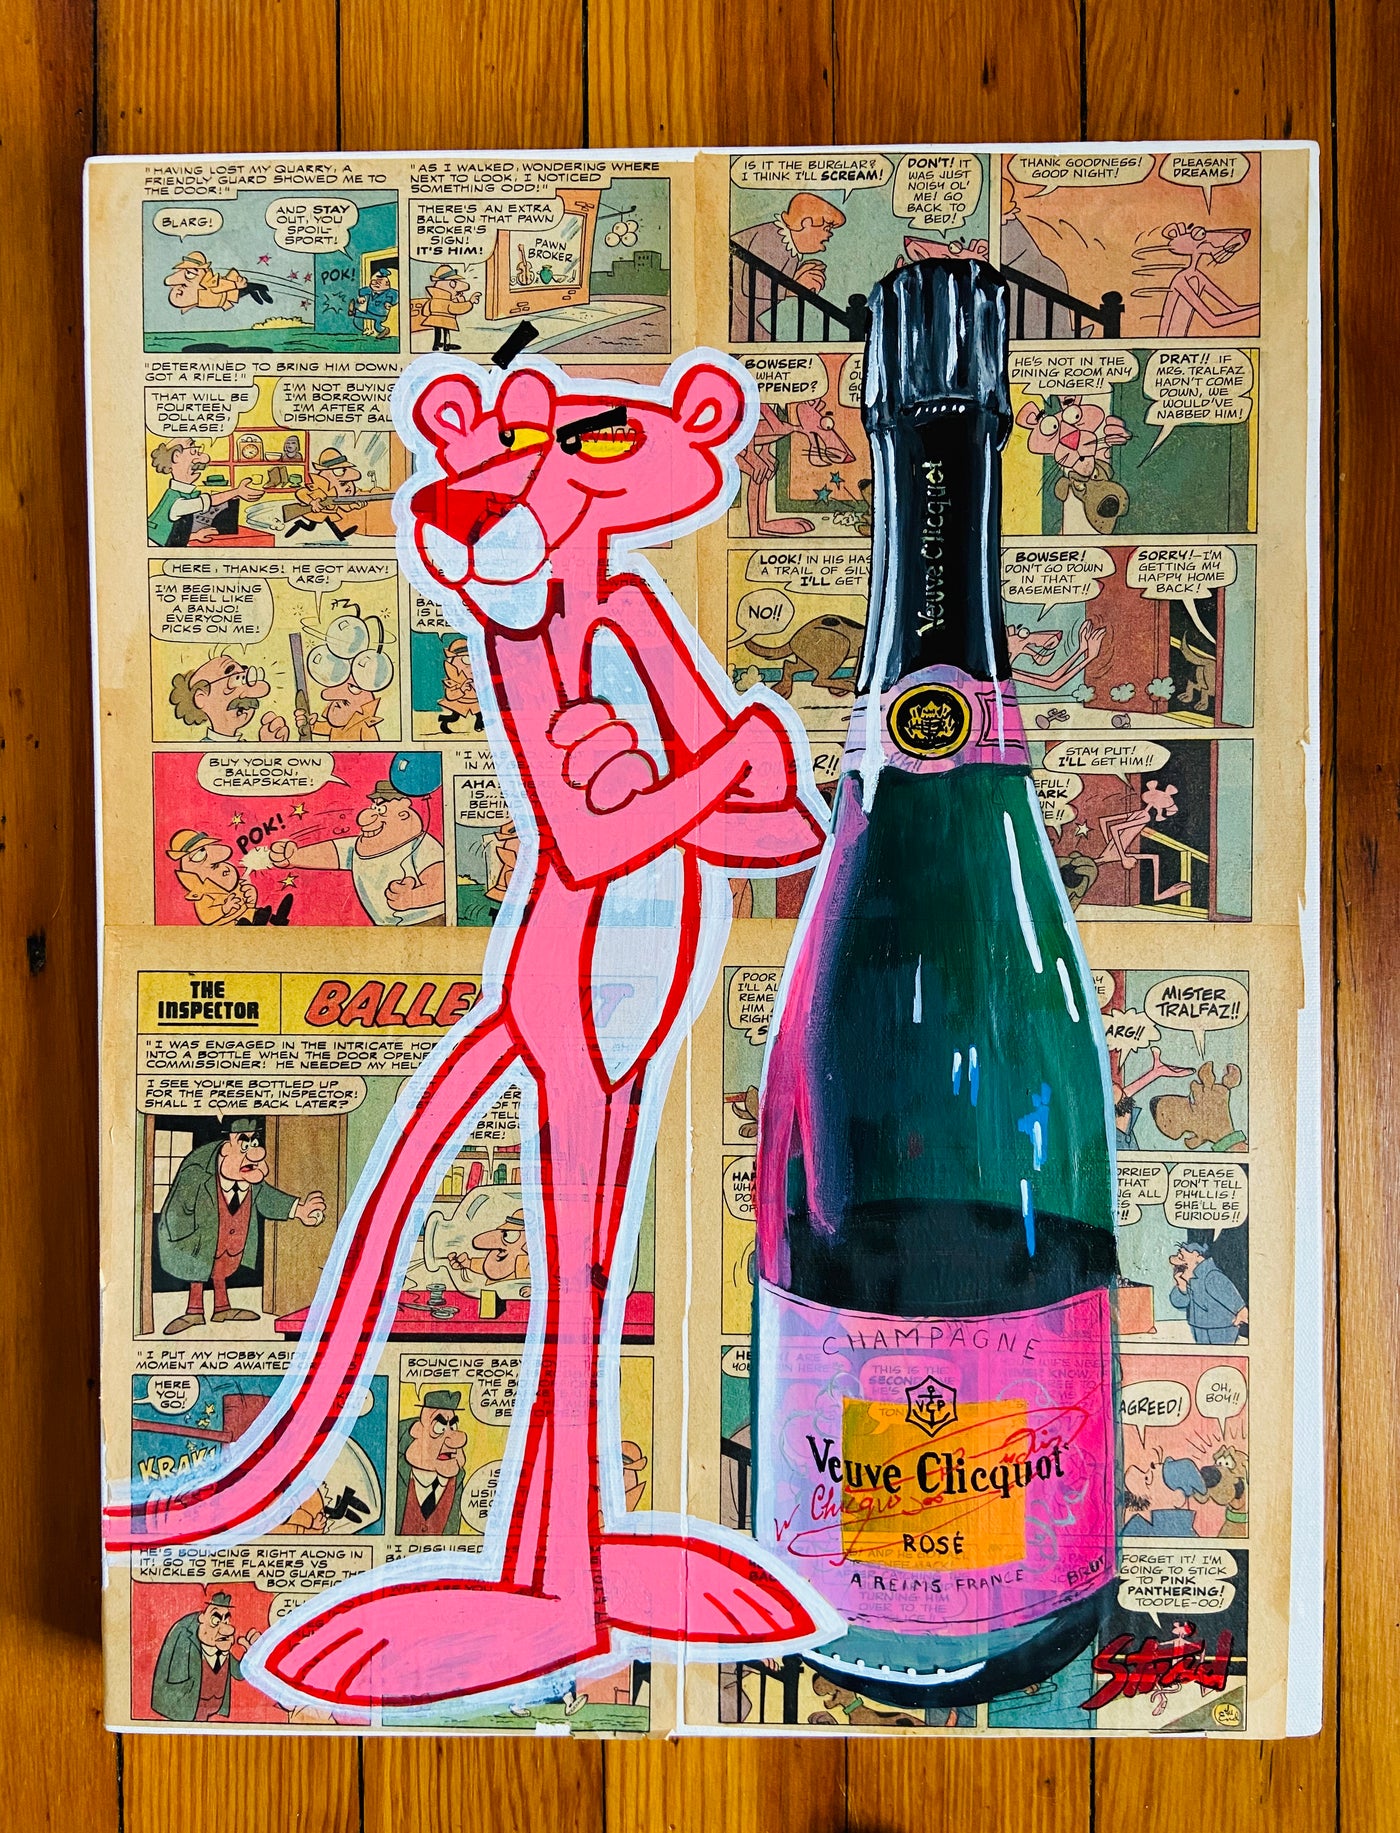 Vintage Champagne Poster: Veuve Clicquot Vintage Print Collection